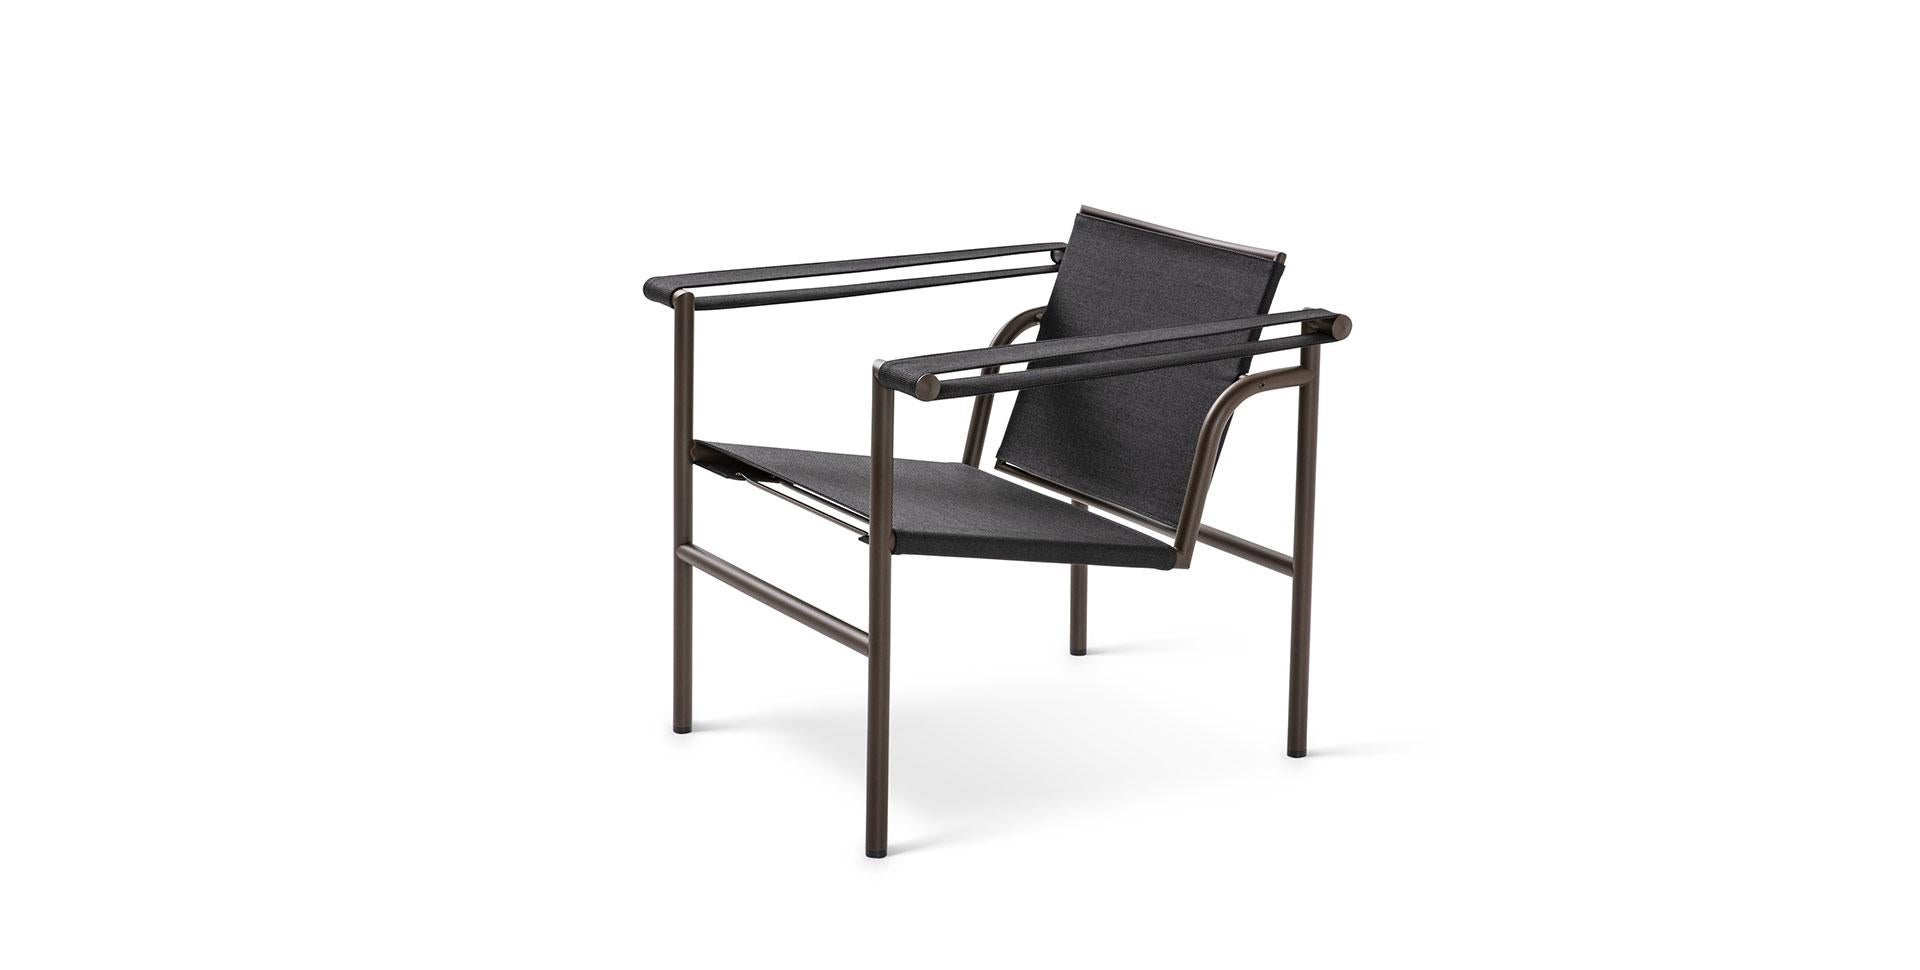 Stuhl, entworfen von Le Corbusier, Pierre Jeanneret und Charlotte Perriand im Jahr 1928. Neu aufgelegt im Jahr 2019.
Hergestellt von Cassina in Italien.

Ein leichter, kompakter Stuhl, der zusammen mit anderen wichtigen Modellen wie den Sesseln LC2